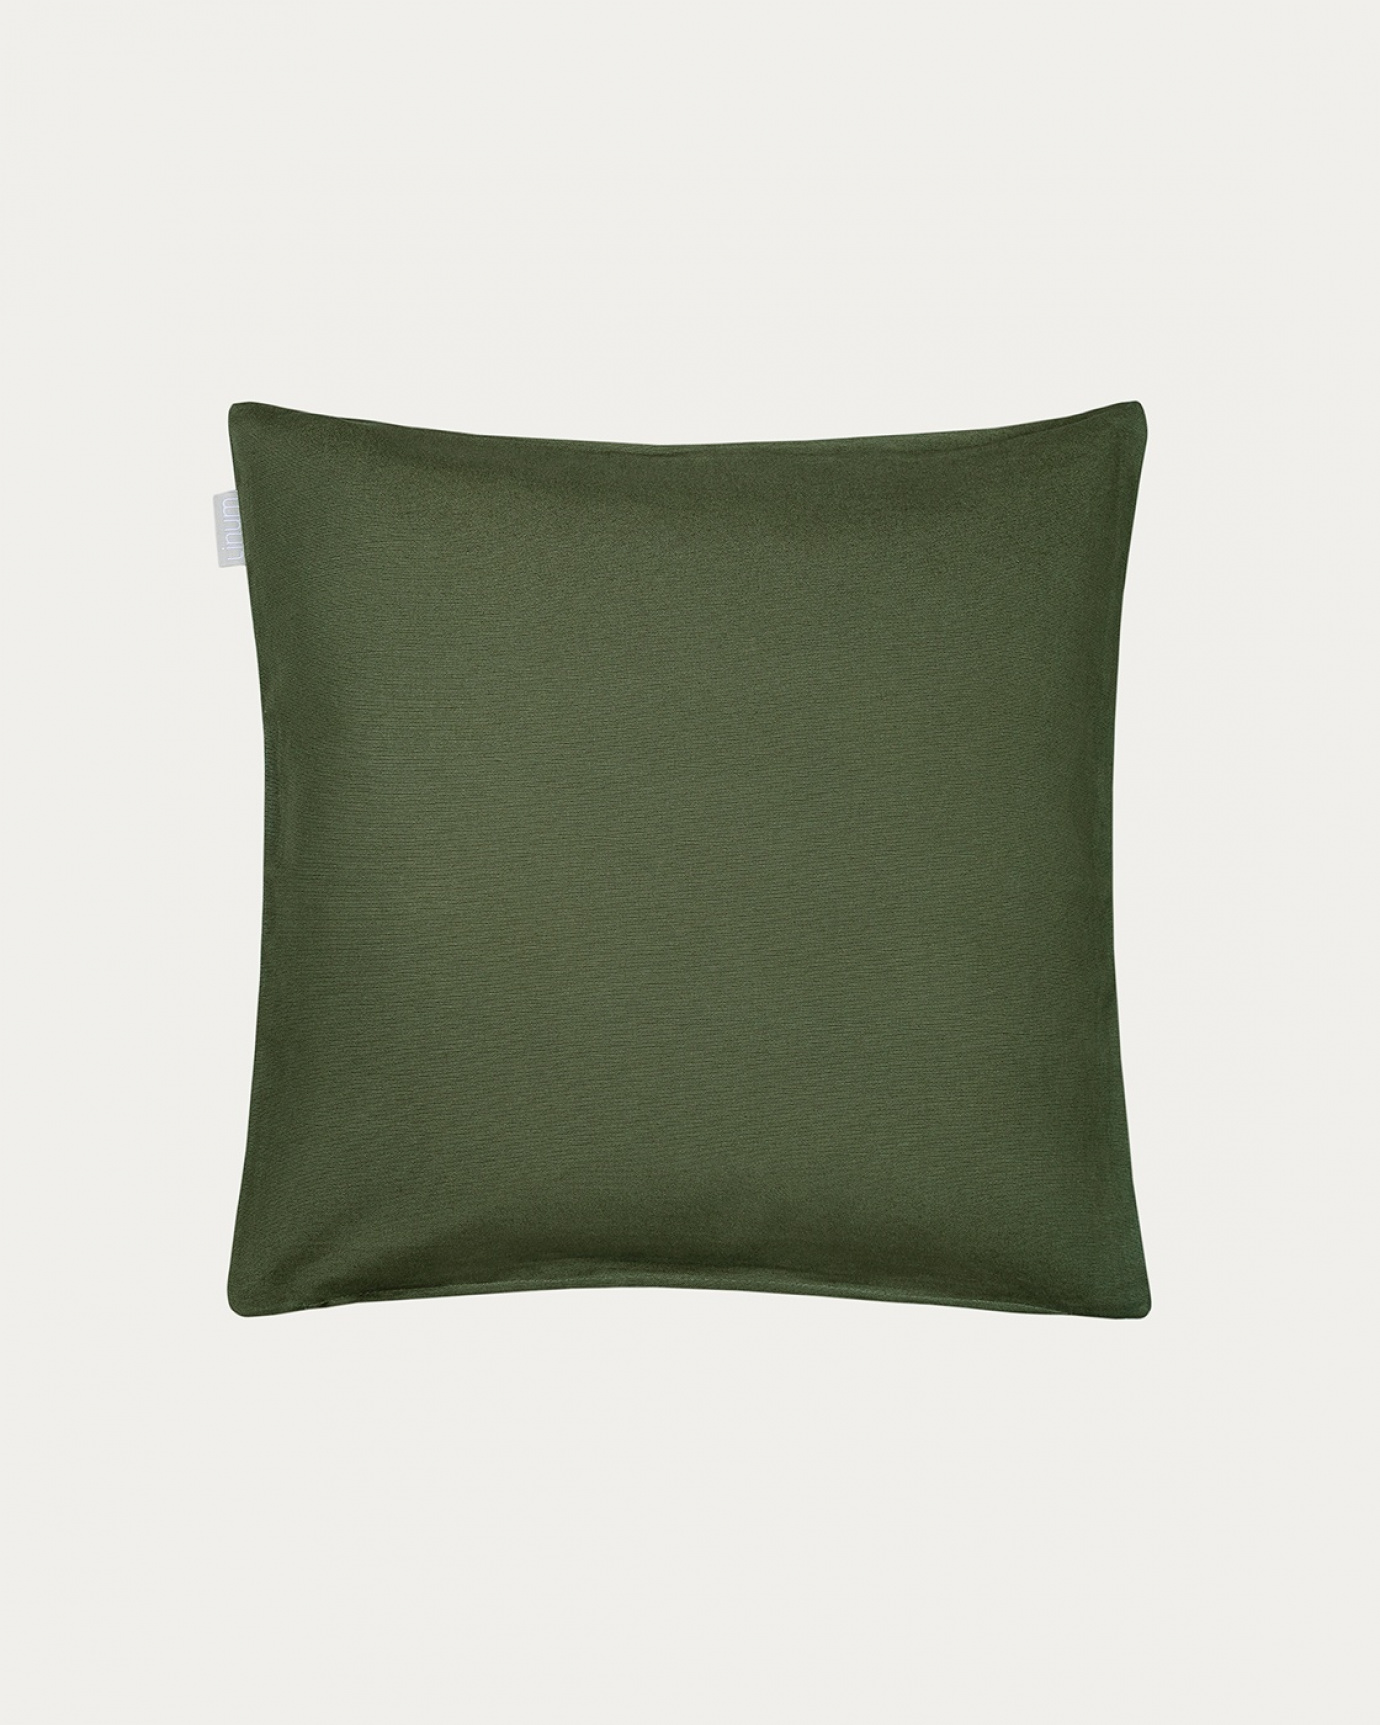 Immagine prodotto verde oliva ANNABELL copricuscini in morbido cotone di LINUM DESIGN. Dimensioni 40x40 cm.